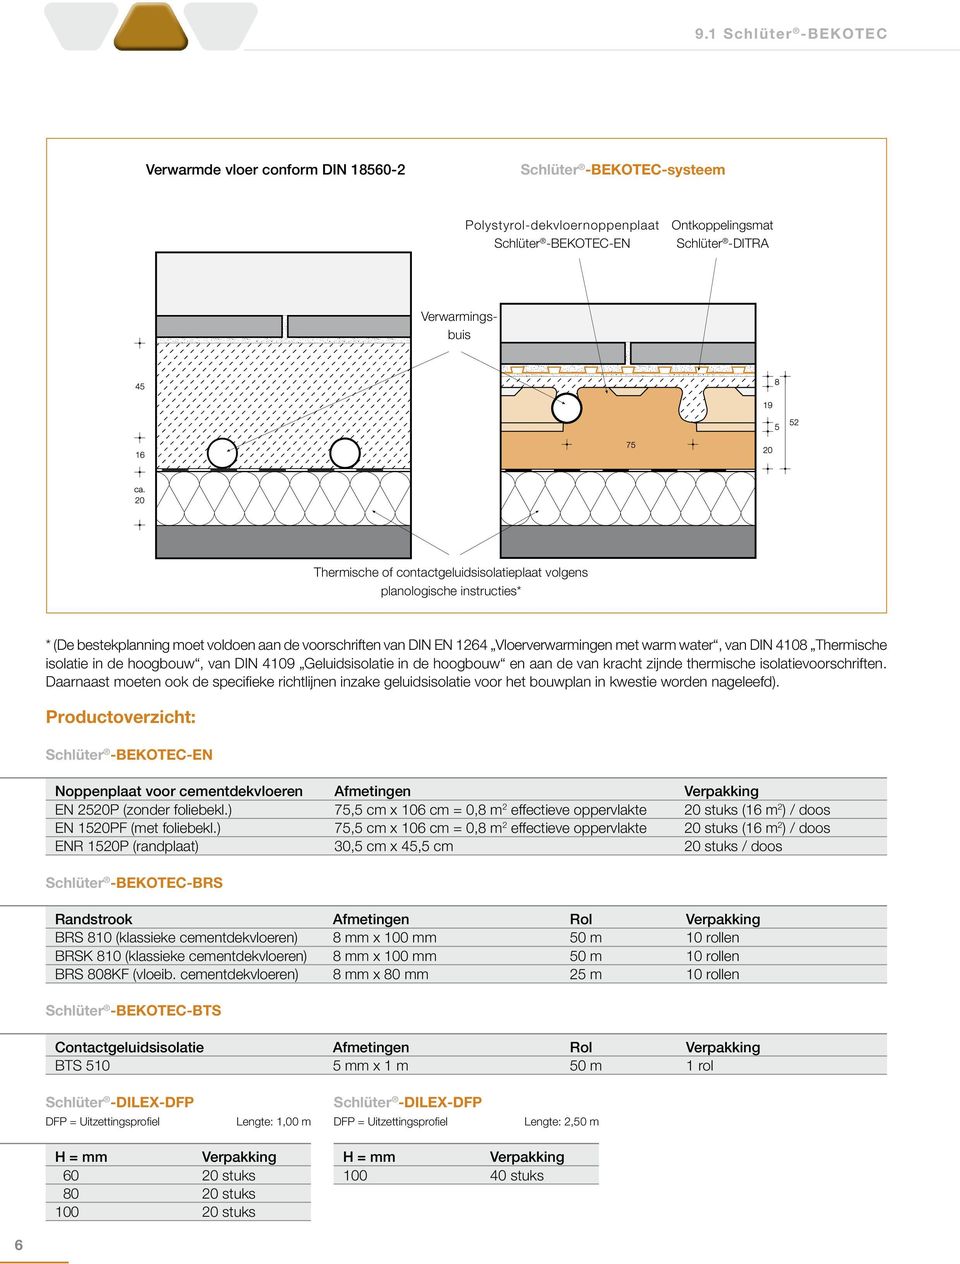 isolatie in de hoogbouw, van DIN 4109 Geluidsisolatie in de hoogbouw en aan de van kracht zijnde thermische isolatievoorschriften.